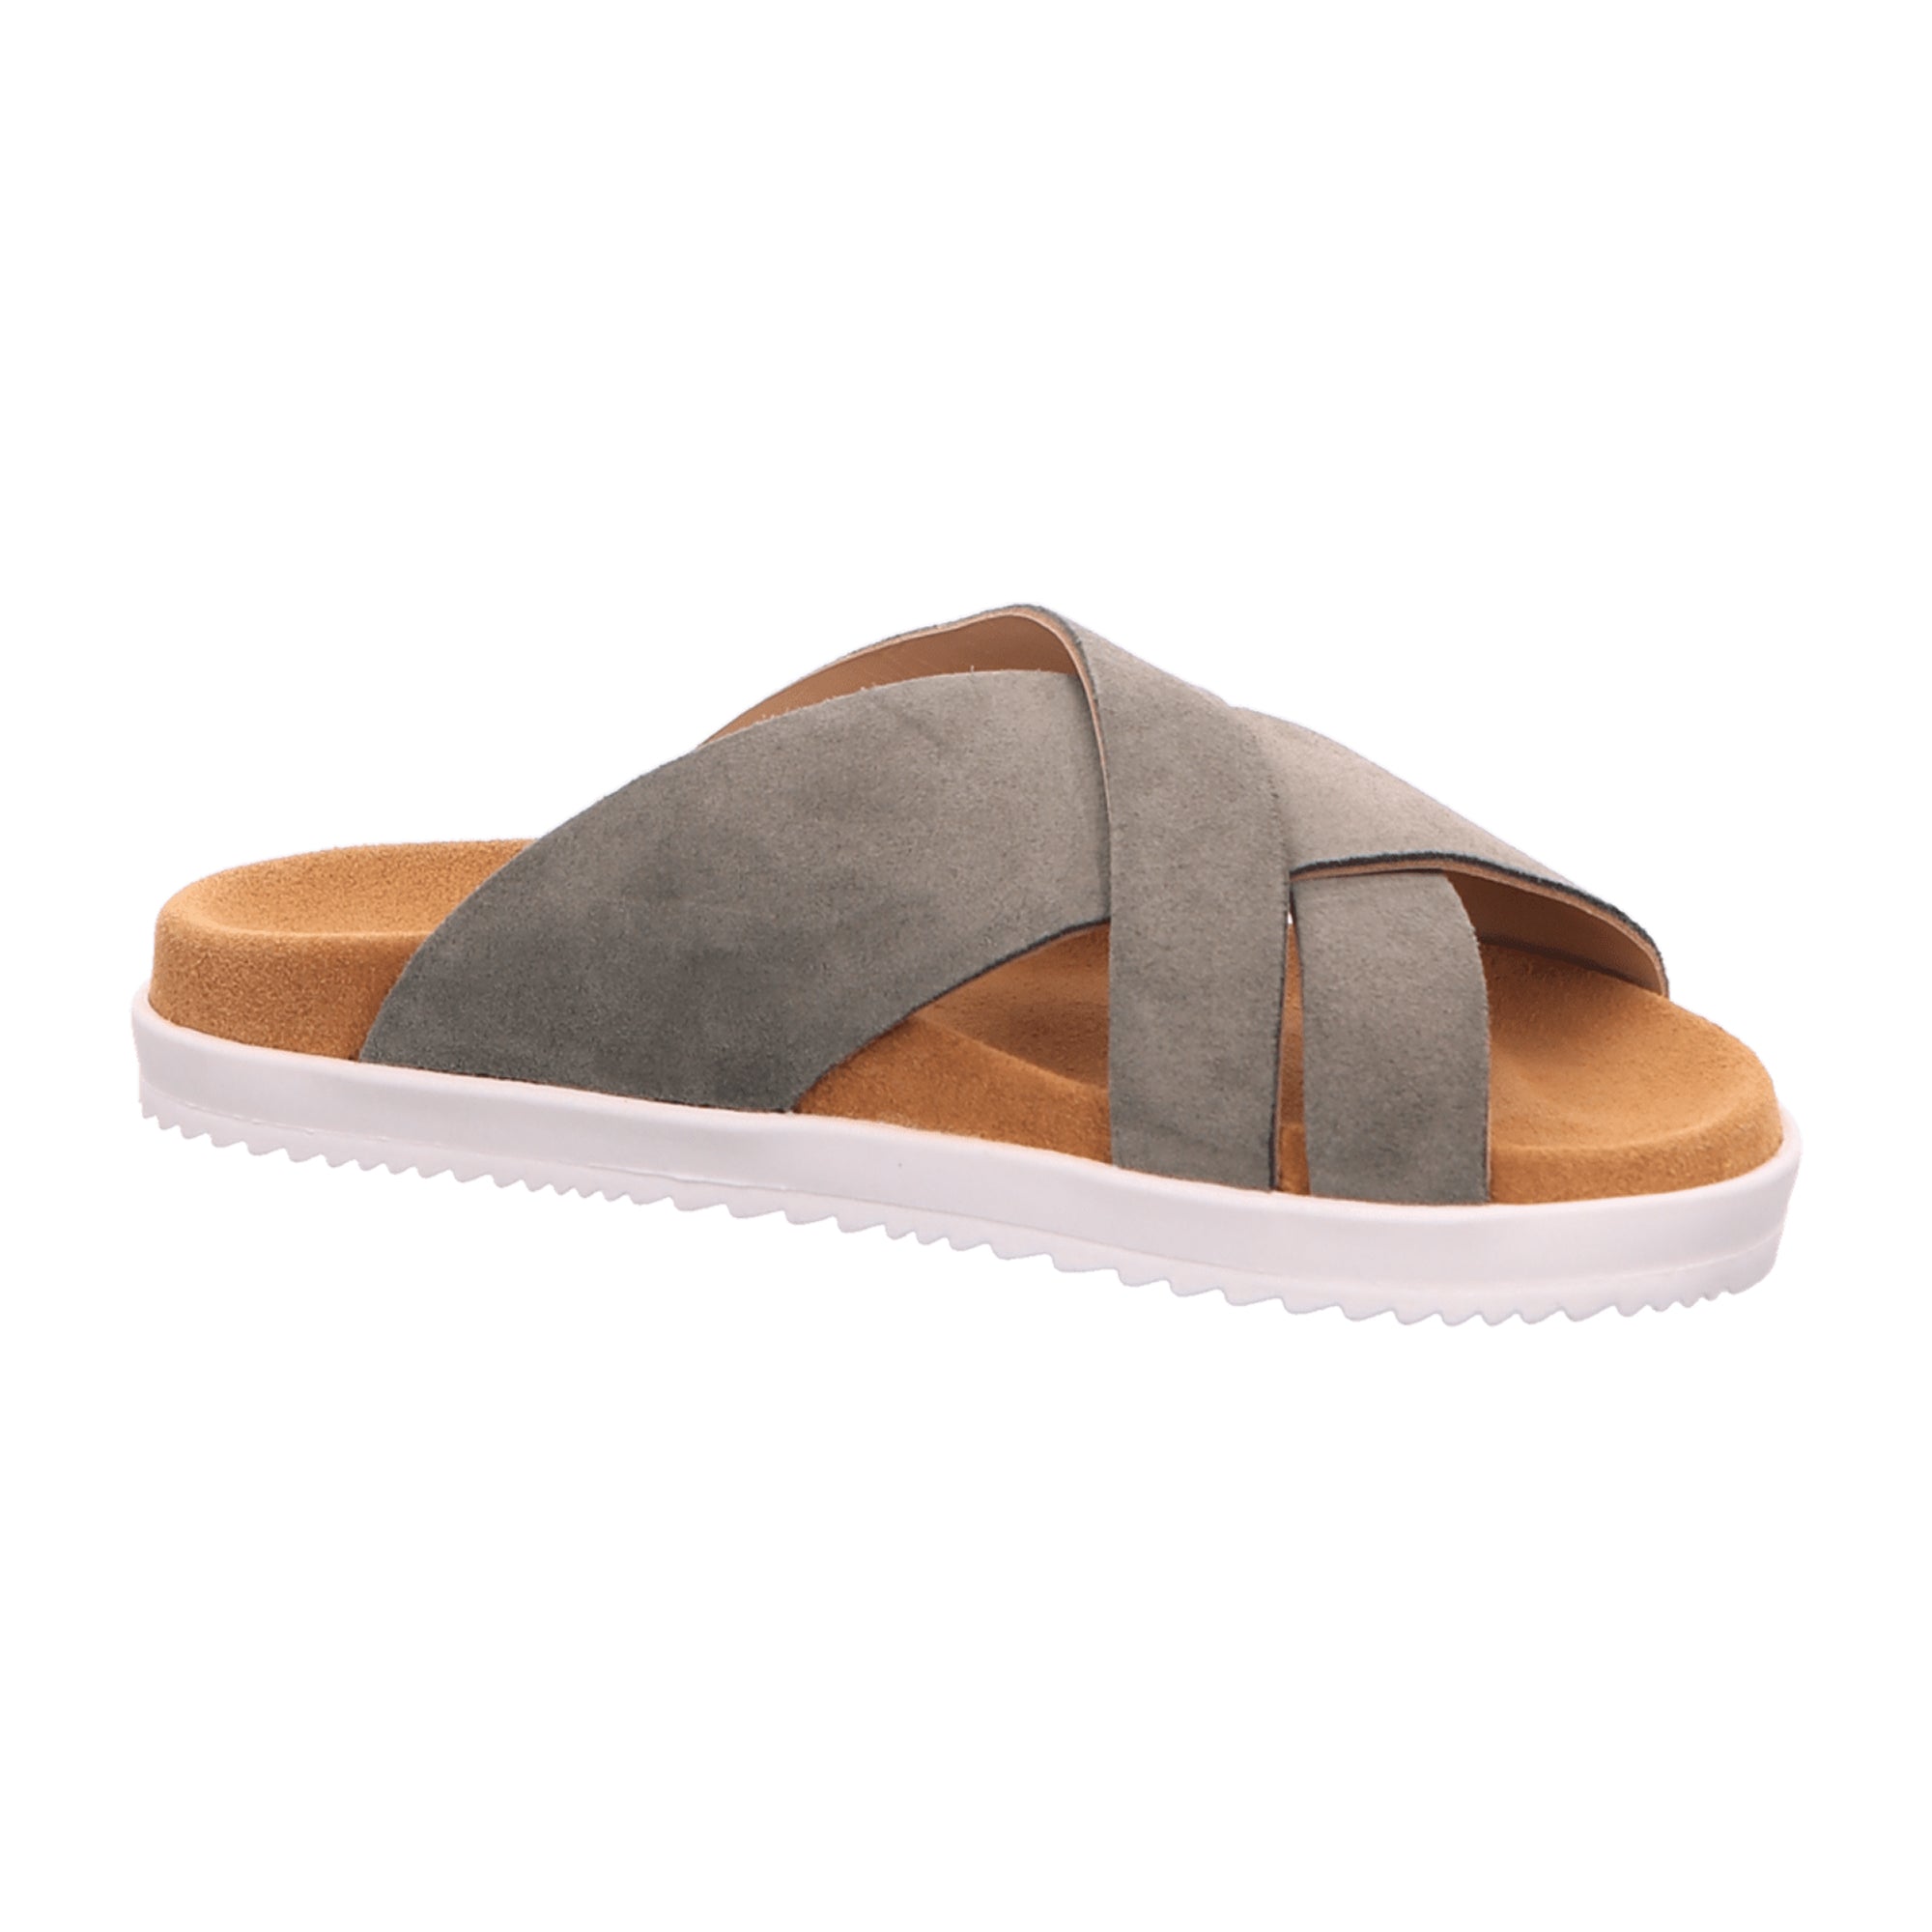 Haflinger Sienna Nubuck Summer Slides for Women - Stylish Khaki Comfort Sandals